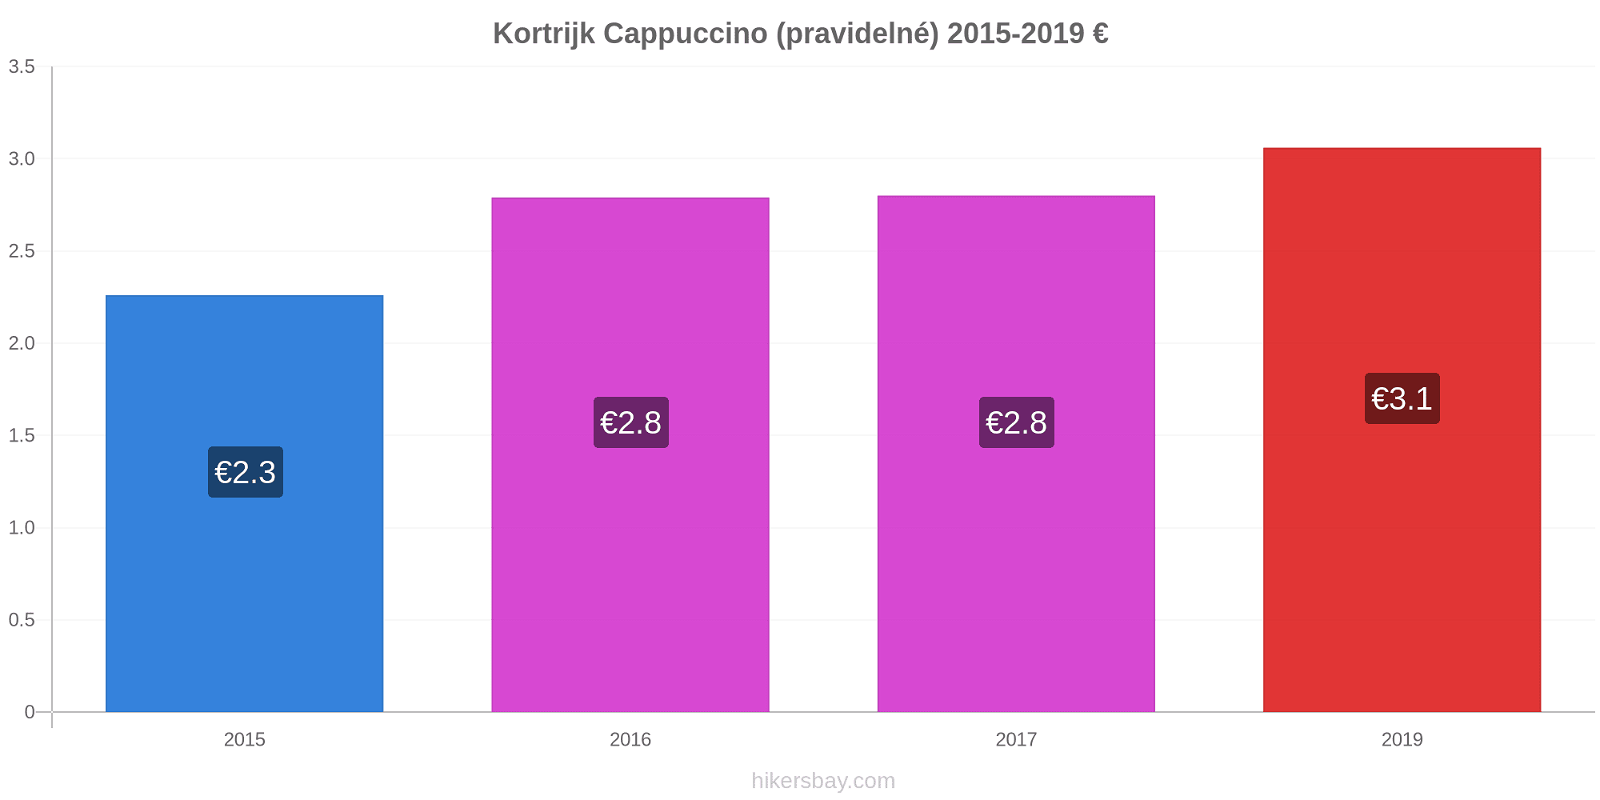 Kortrijk změny cen Cappuccino (pravidelné) hikersbay.com